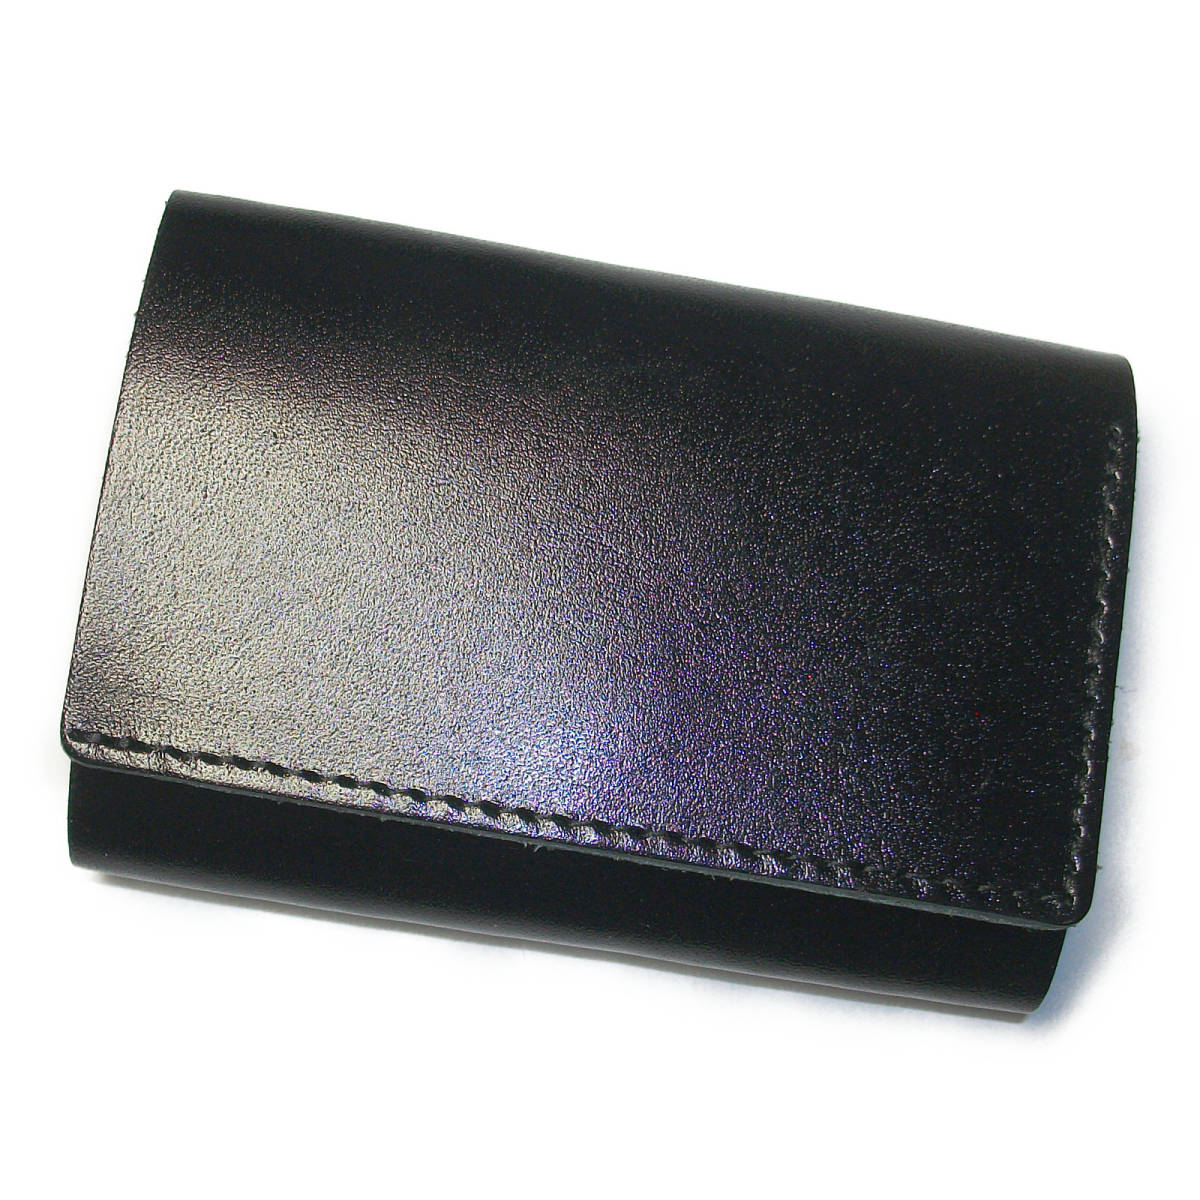 新品、本物、当店在庫だから安心】 ミニ財布 ブラック 小さい財布 三つ折り財布 コンパクト 小銭 コインケース